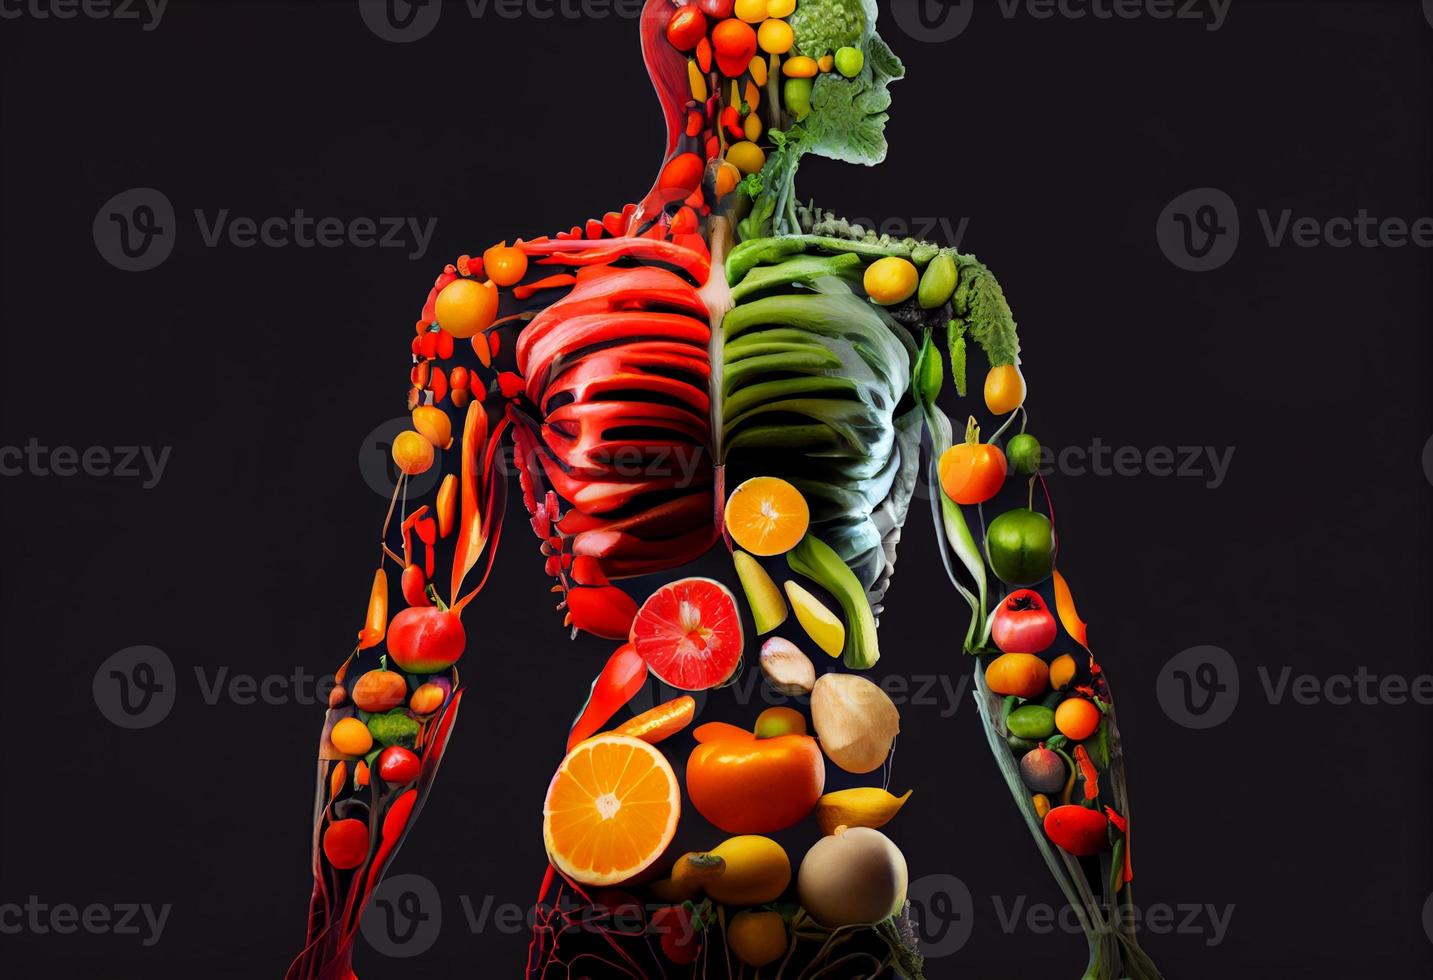 Composición Con Variedad De Verduras Y Frutas Frescas. Dieta De  Desintoxicación. Fotos, retratos, imágenes y fotografía de archivo libres  de derecho. Image 51291062